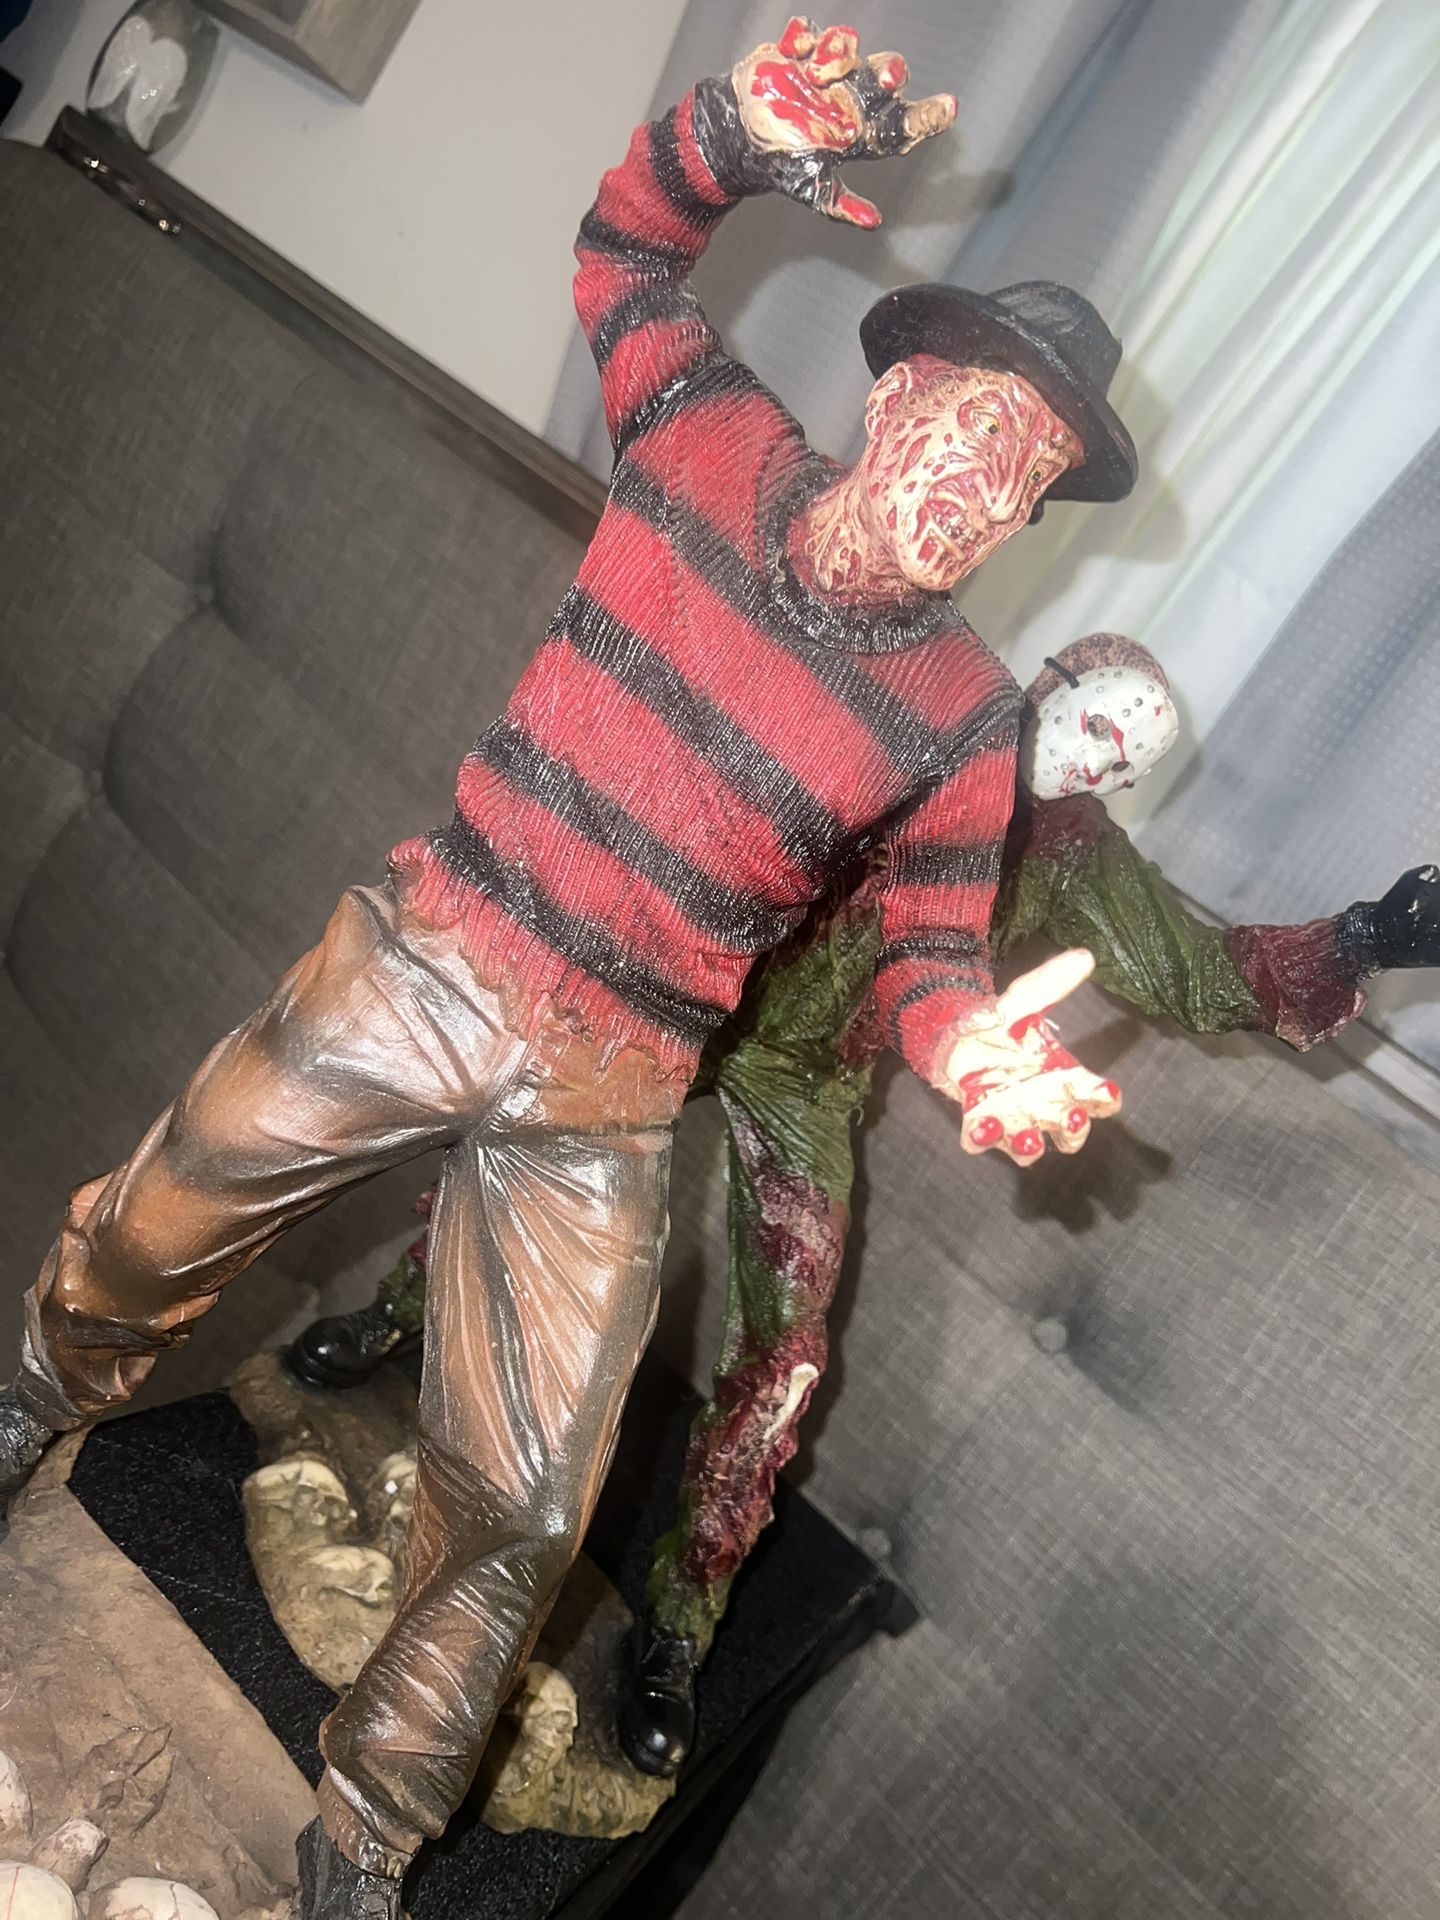 Freddy Krueger & Jason statues (HALLOWEEN)